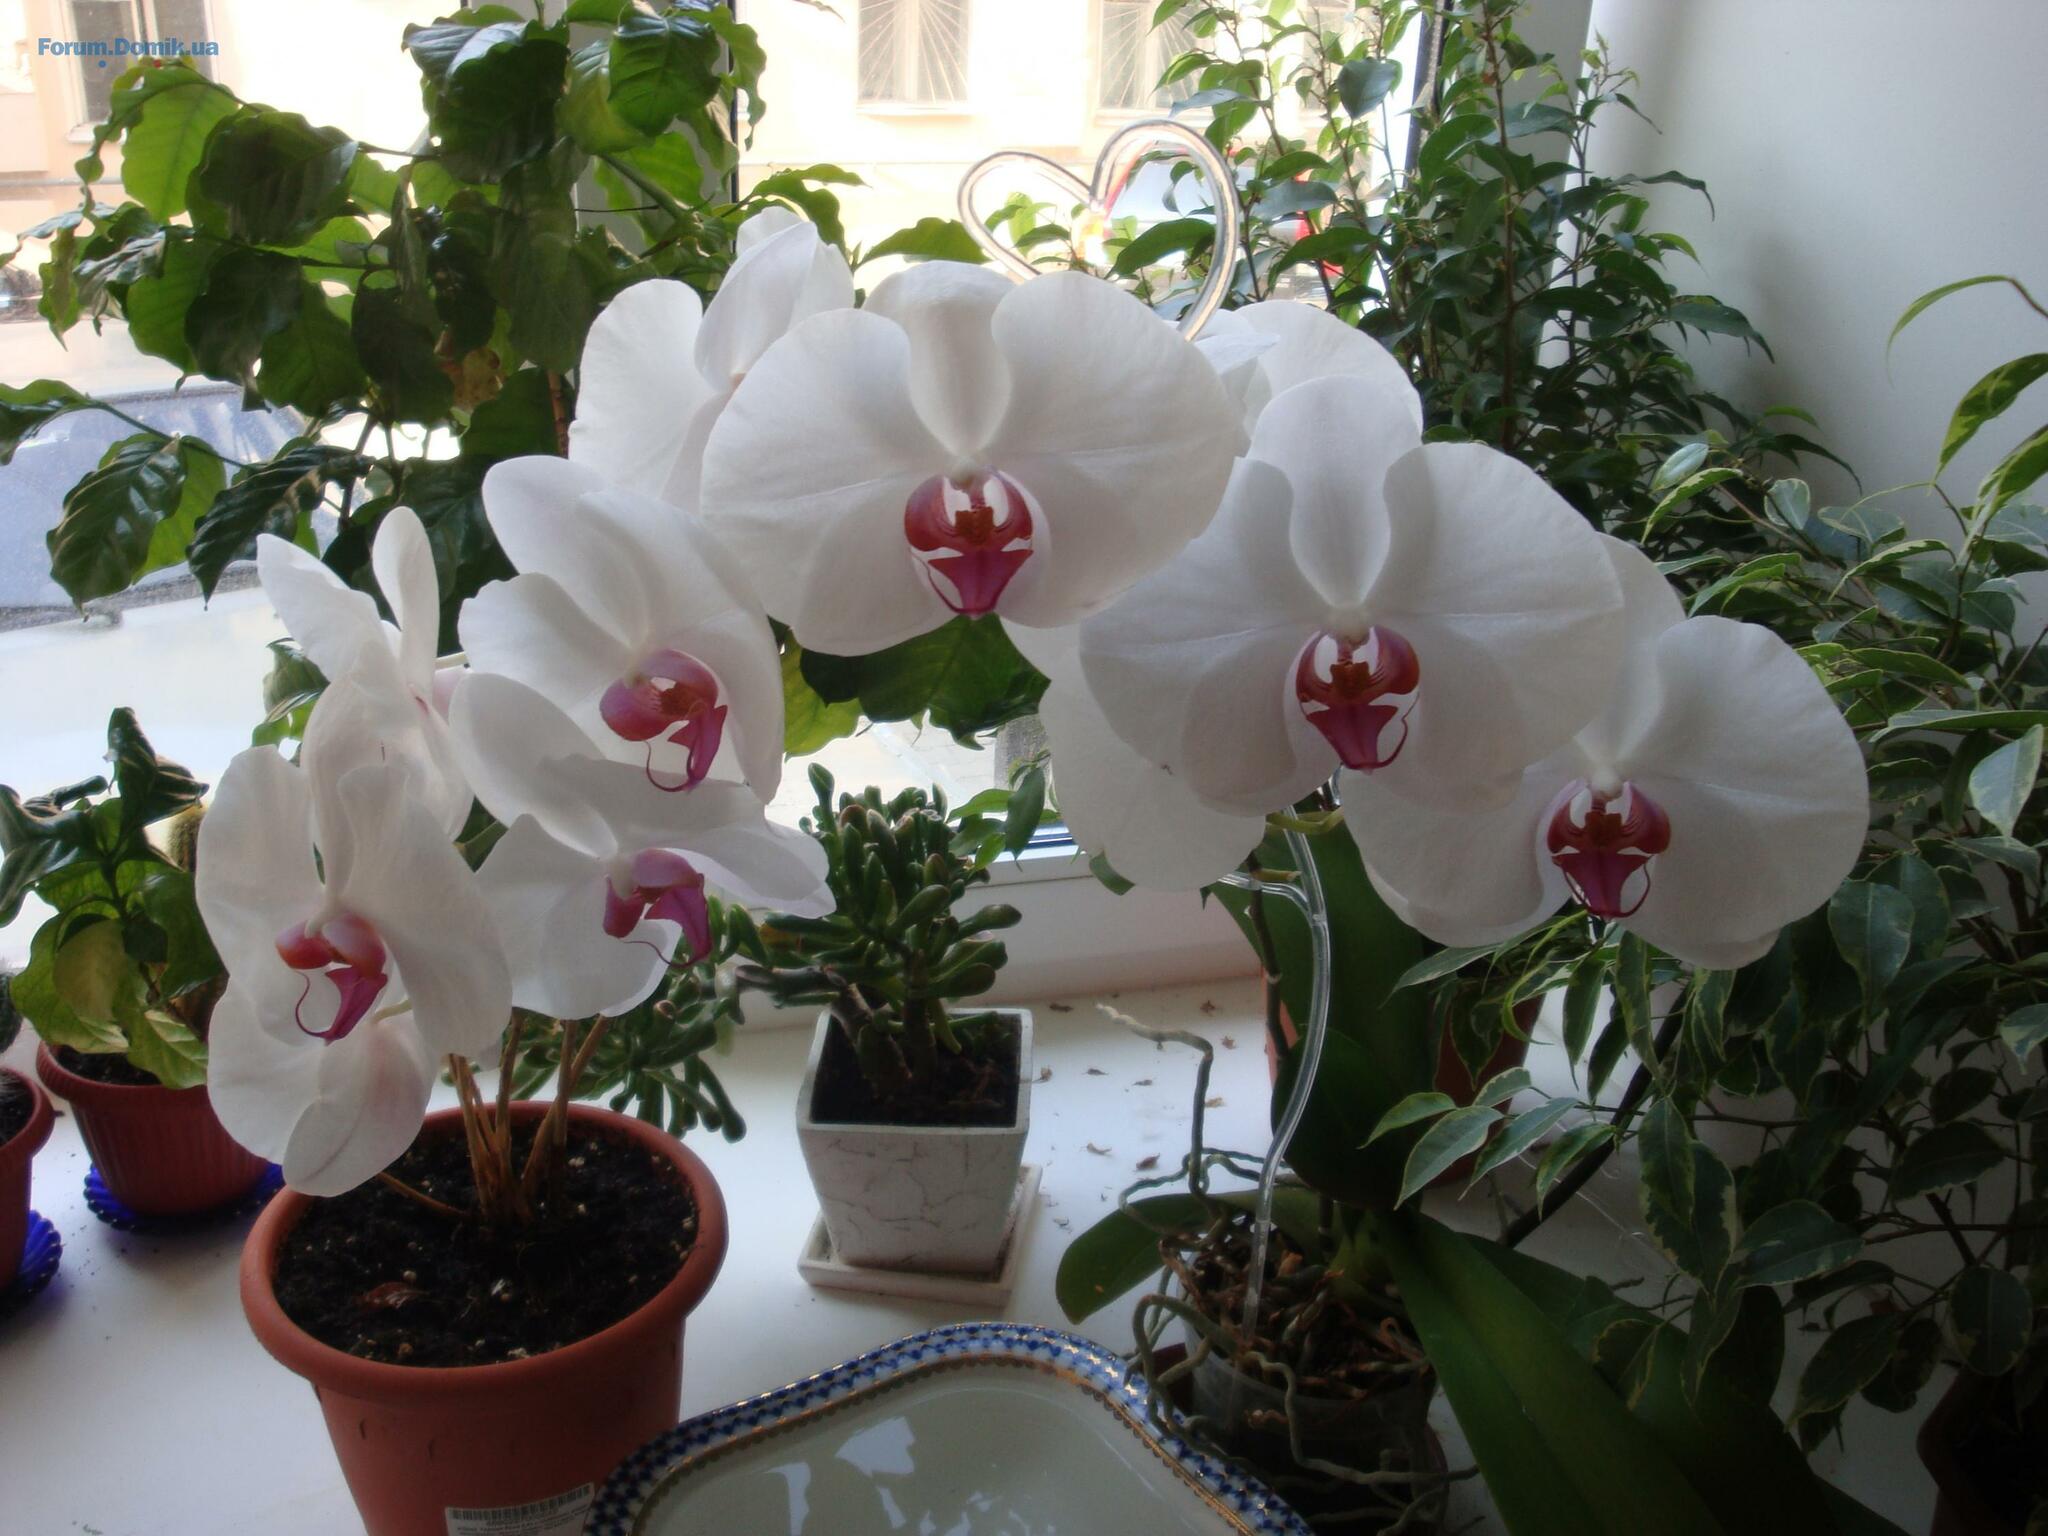 Как правильно ухаживать за орхидеями